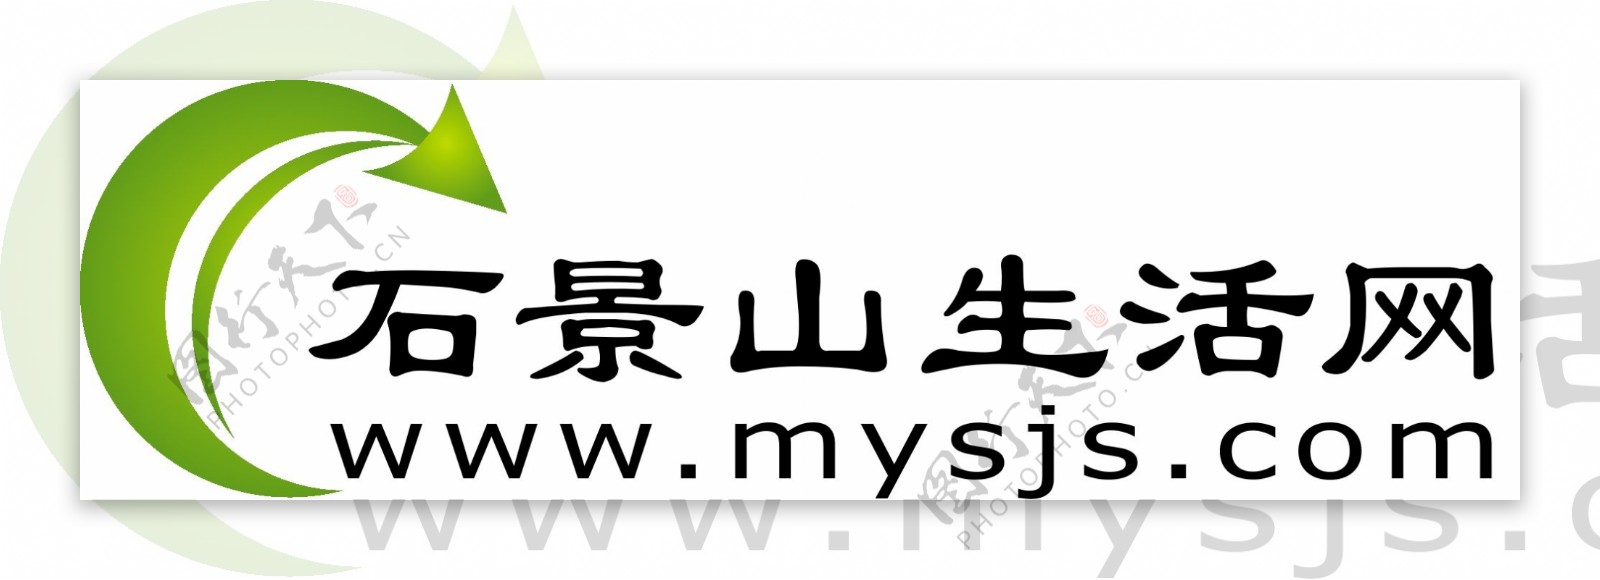 石景山生活網logo图片